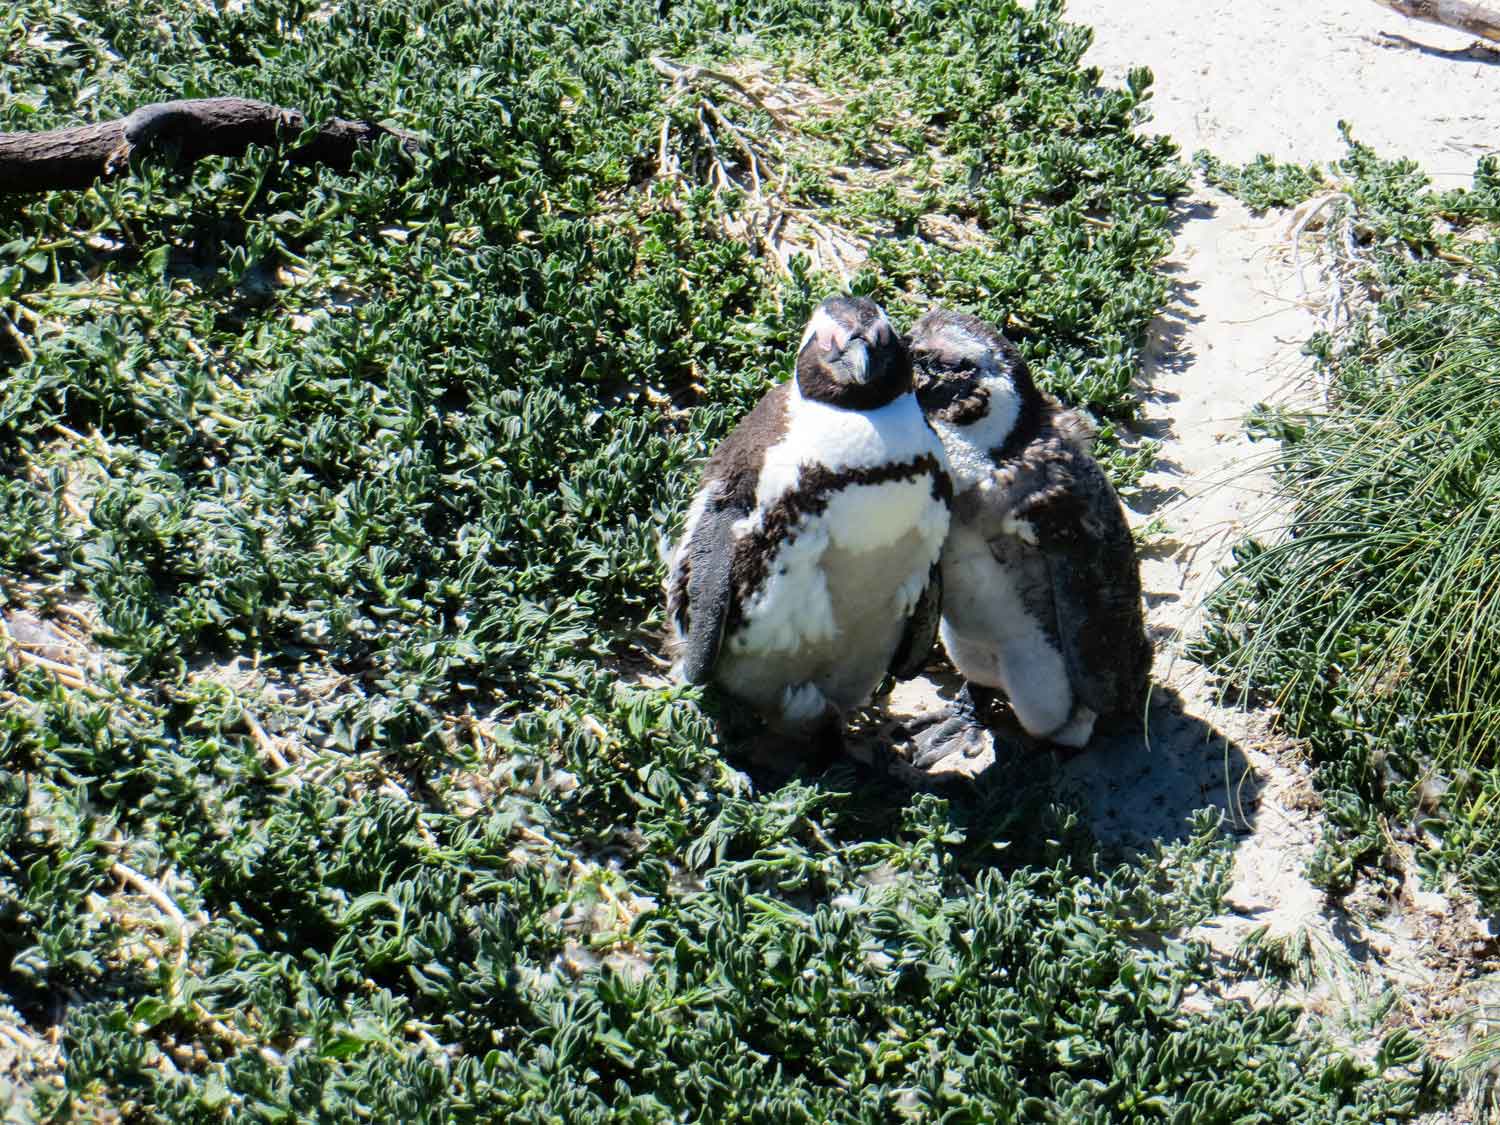 Penguins at Boulders Beach Cape Town